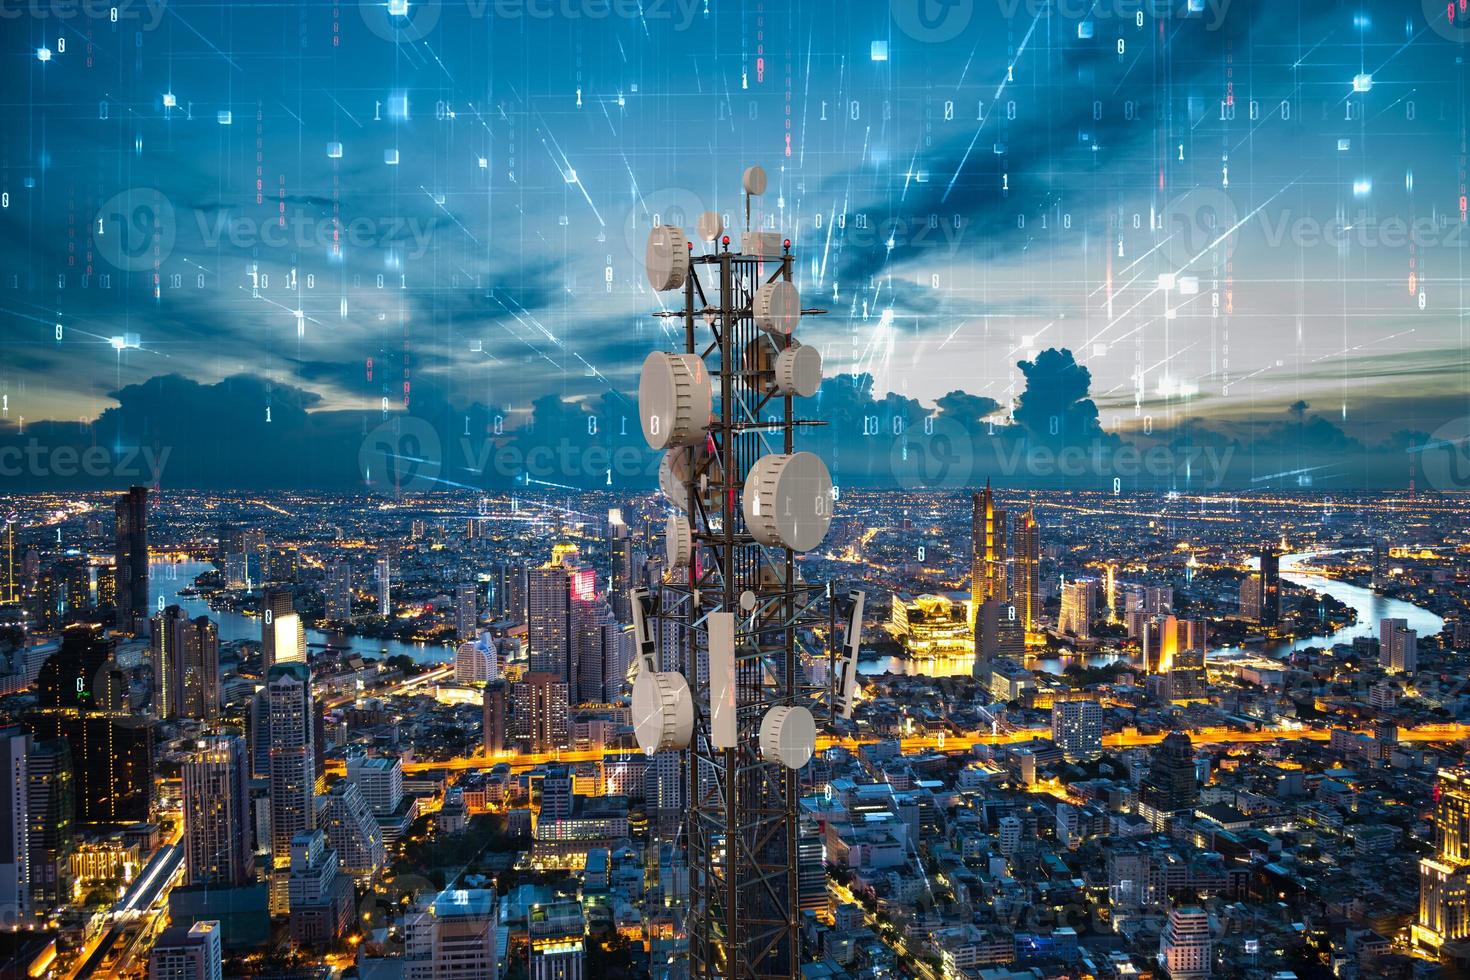 torre de telecomunicaciones con antena de red celular 5g en el fondo de la ciudad nocturna, concepto de big data digital foto